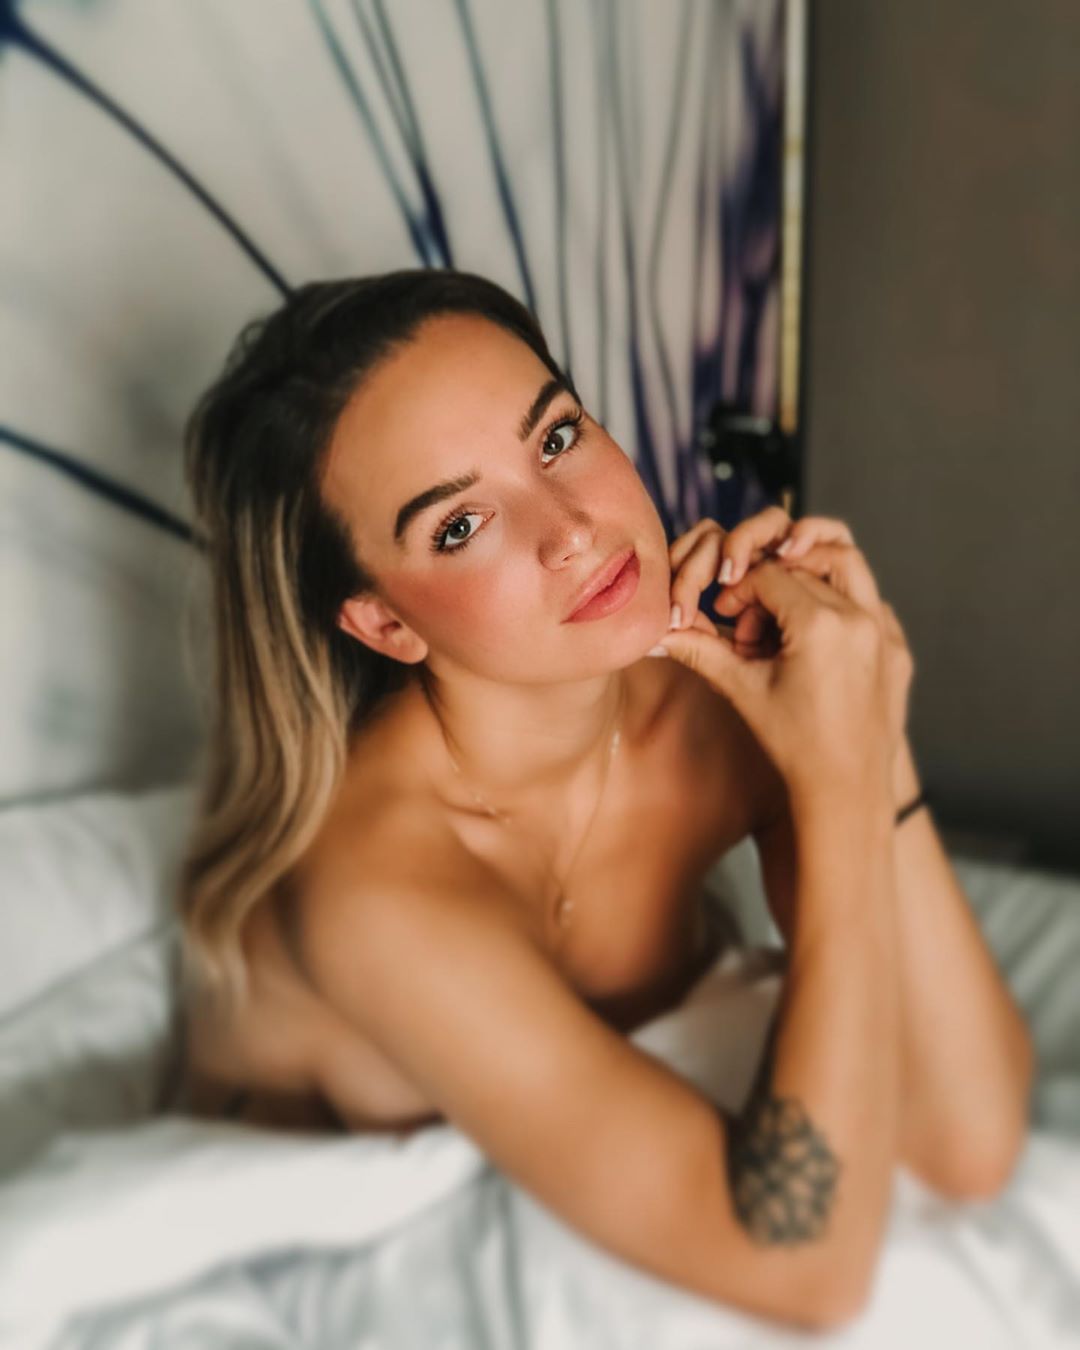 Julia Römmelt Sexy & Topless (20 Photos)